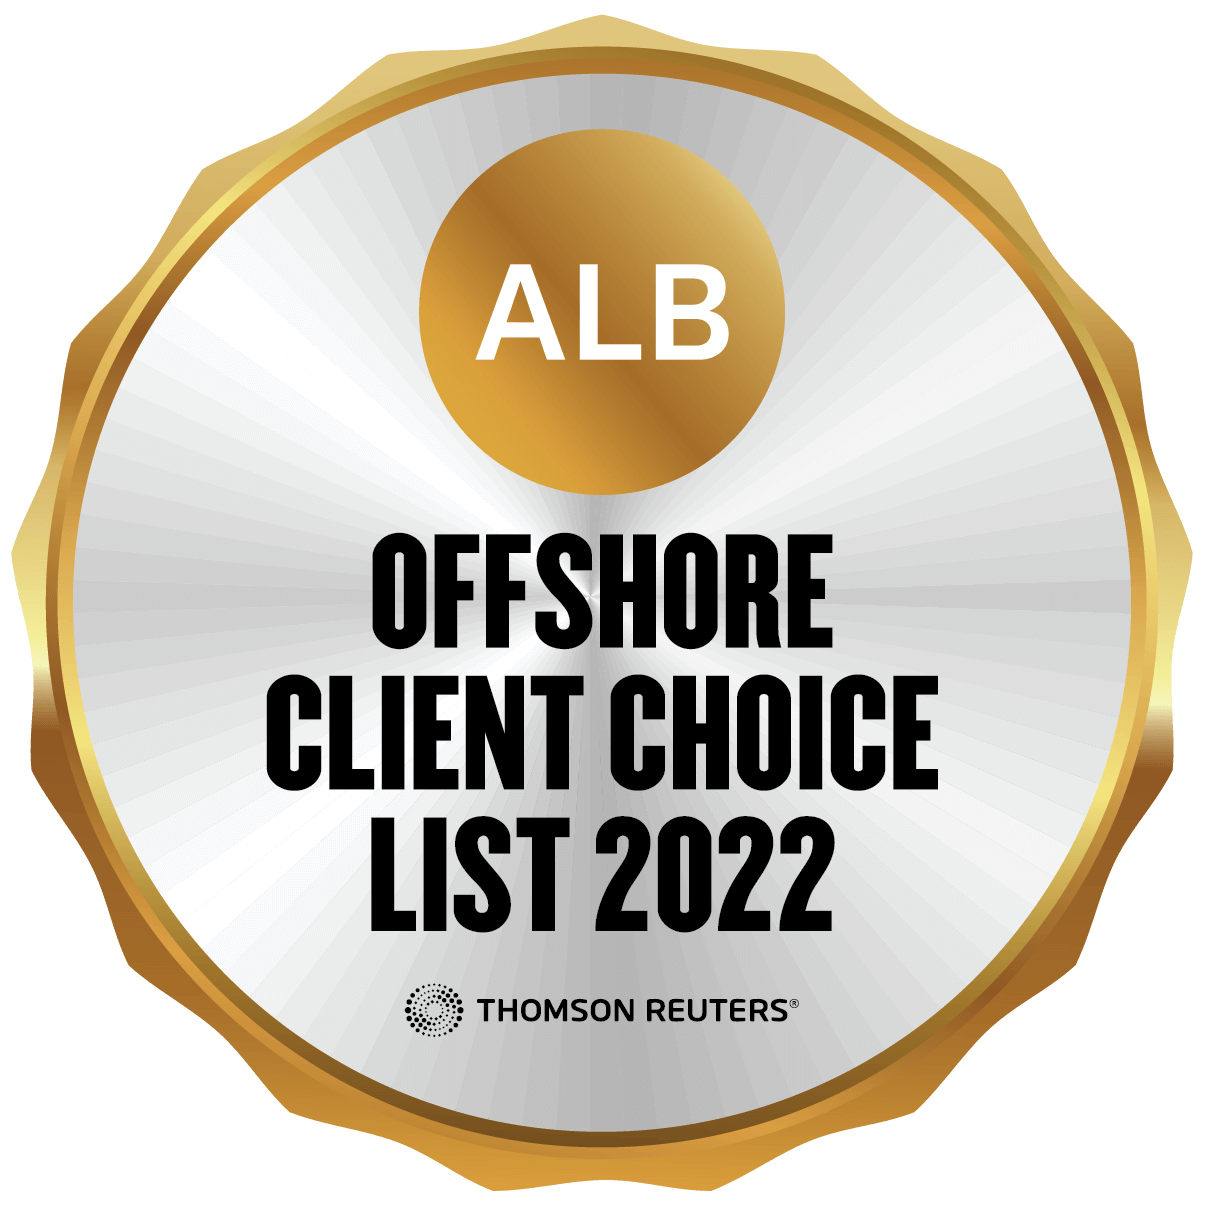 凯瑞奥信ALB Badge 2022 - Offshore Client Choice List 